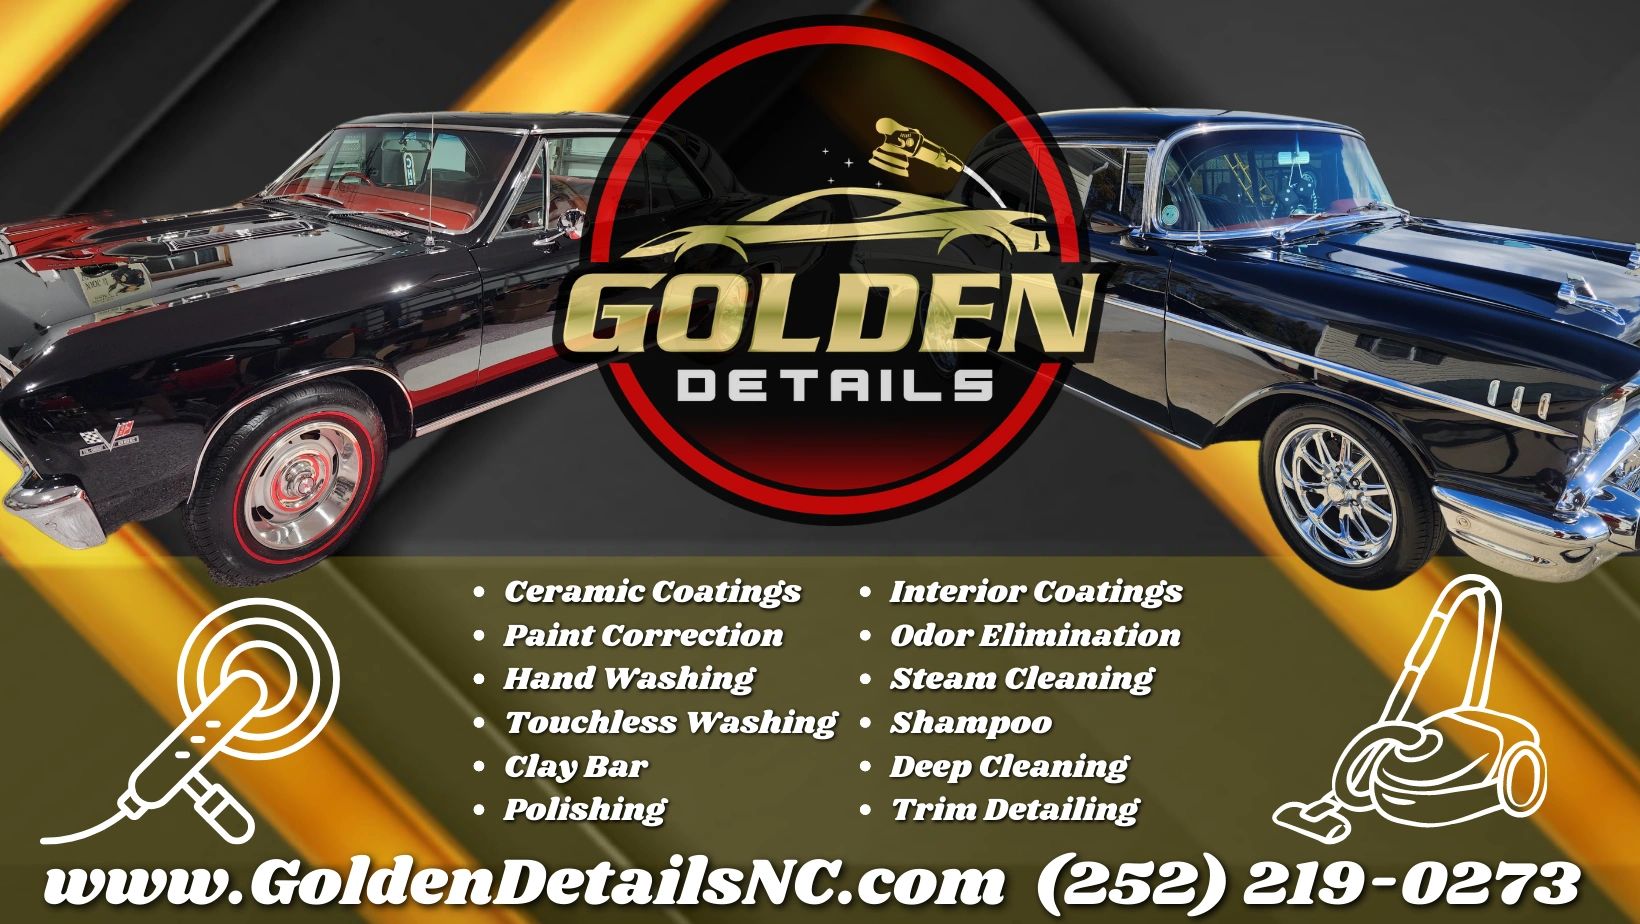 Golden Details Mobile Auto Detailing